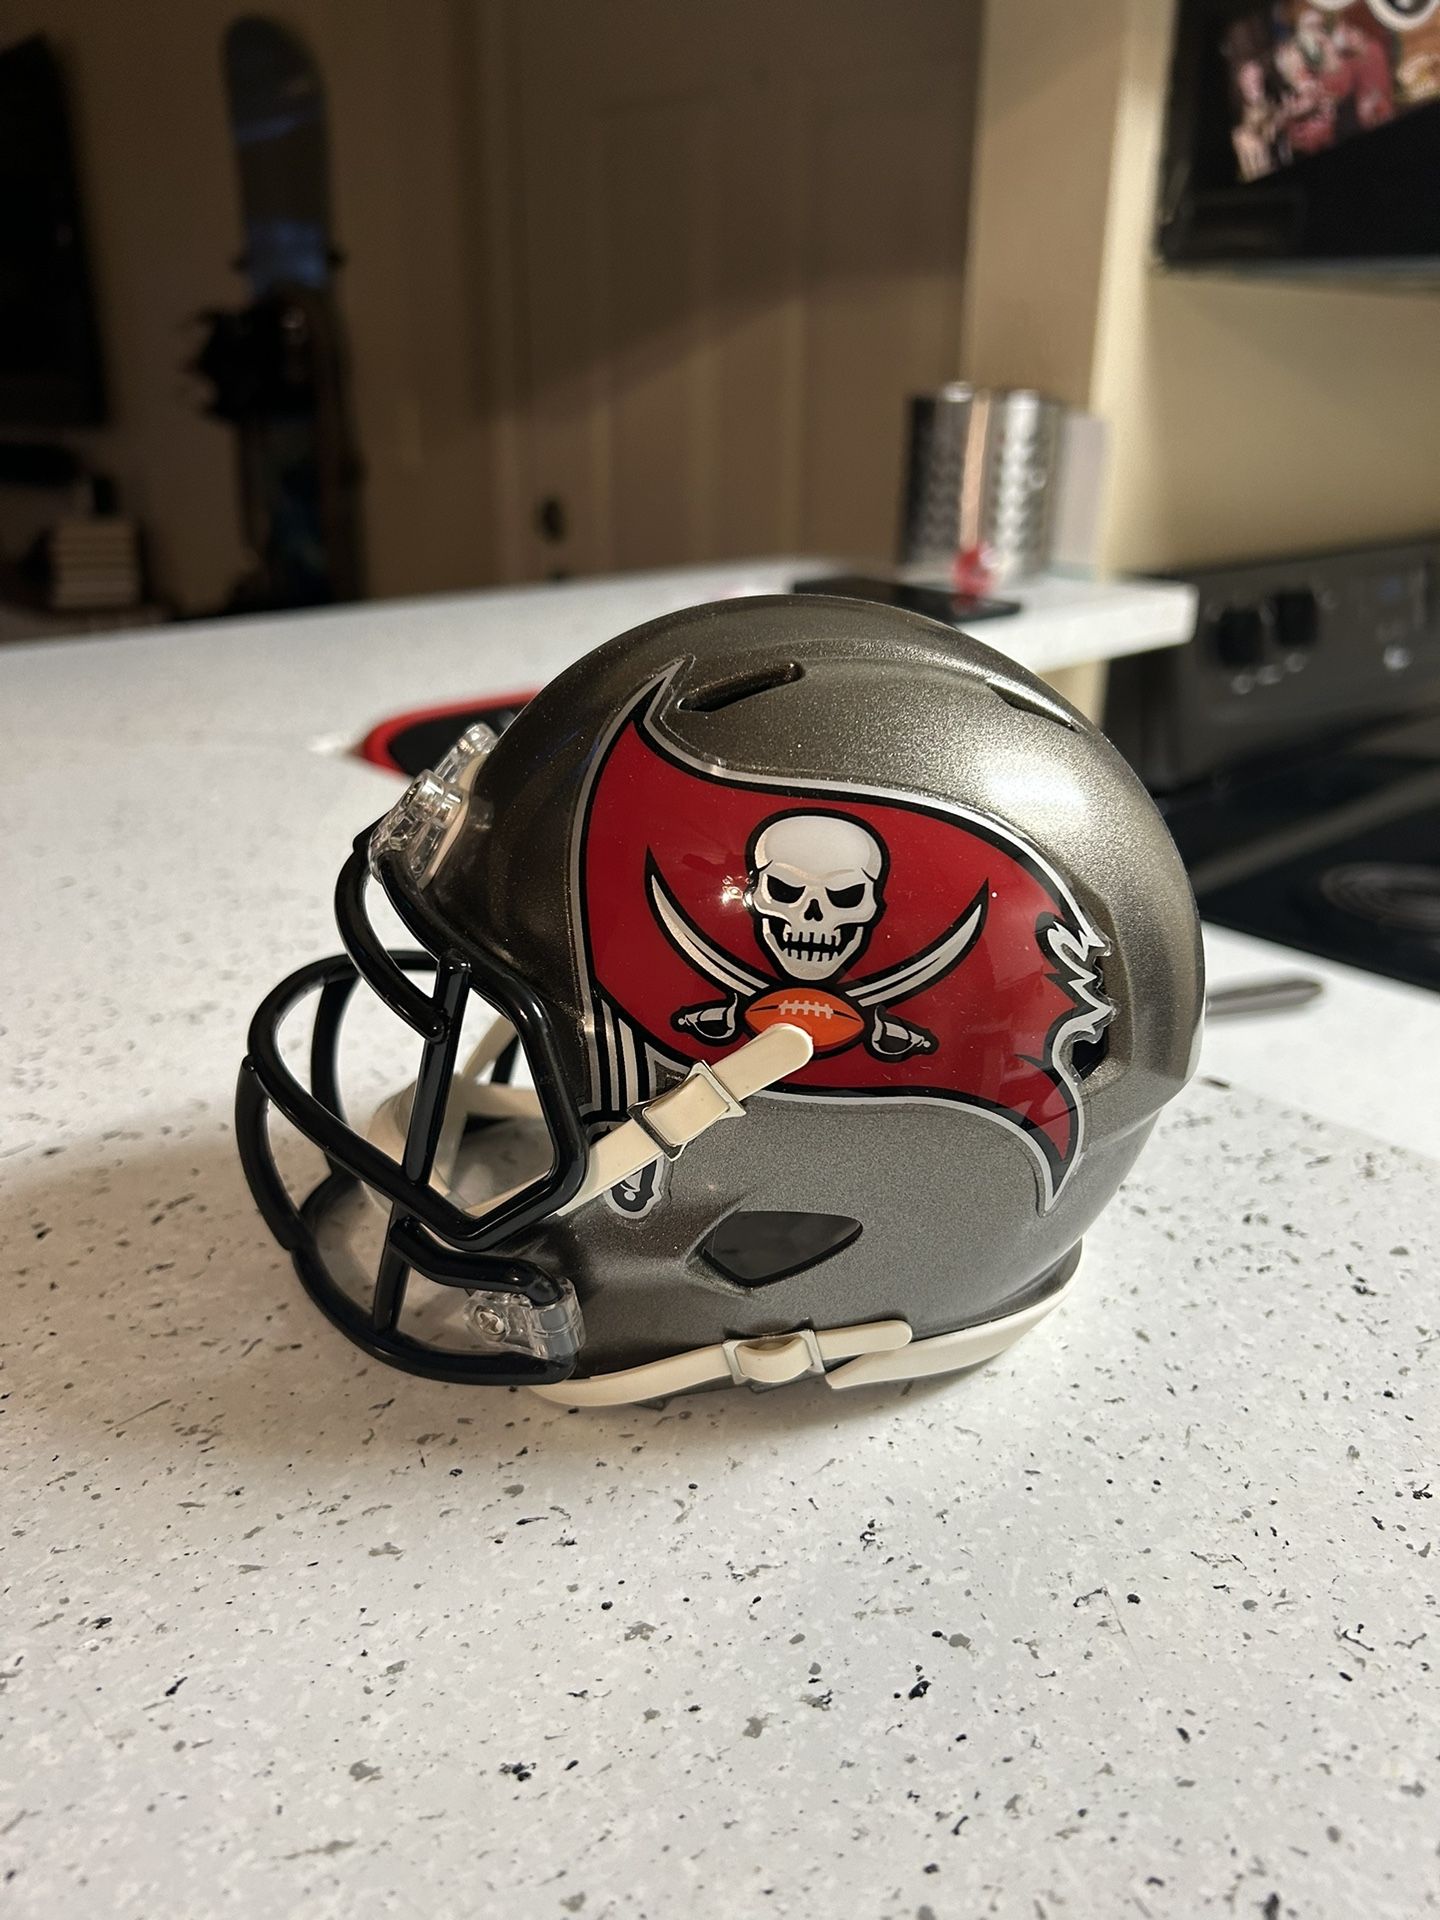 NFL buccaneers Mini Helmet